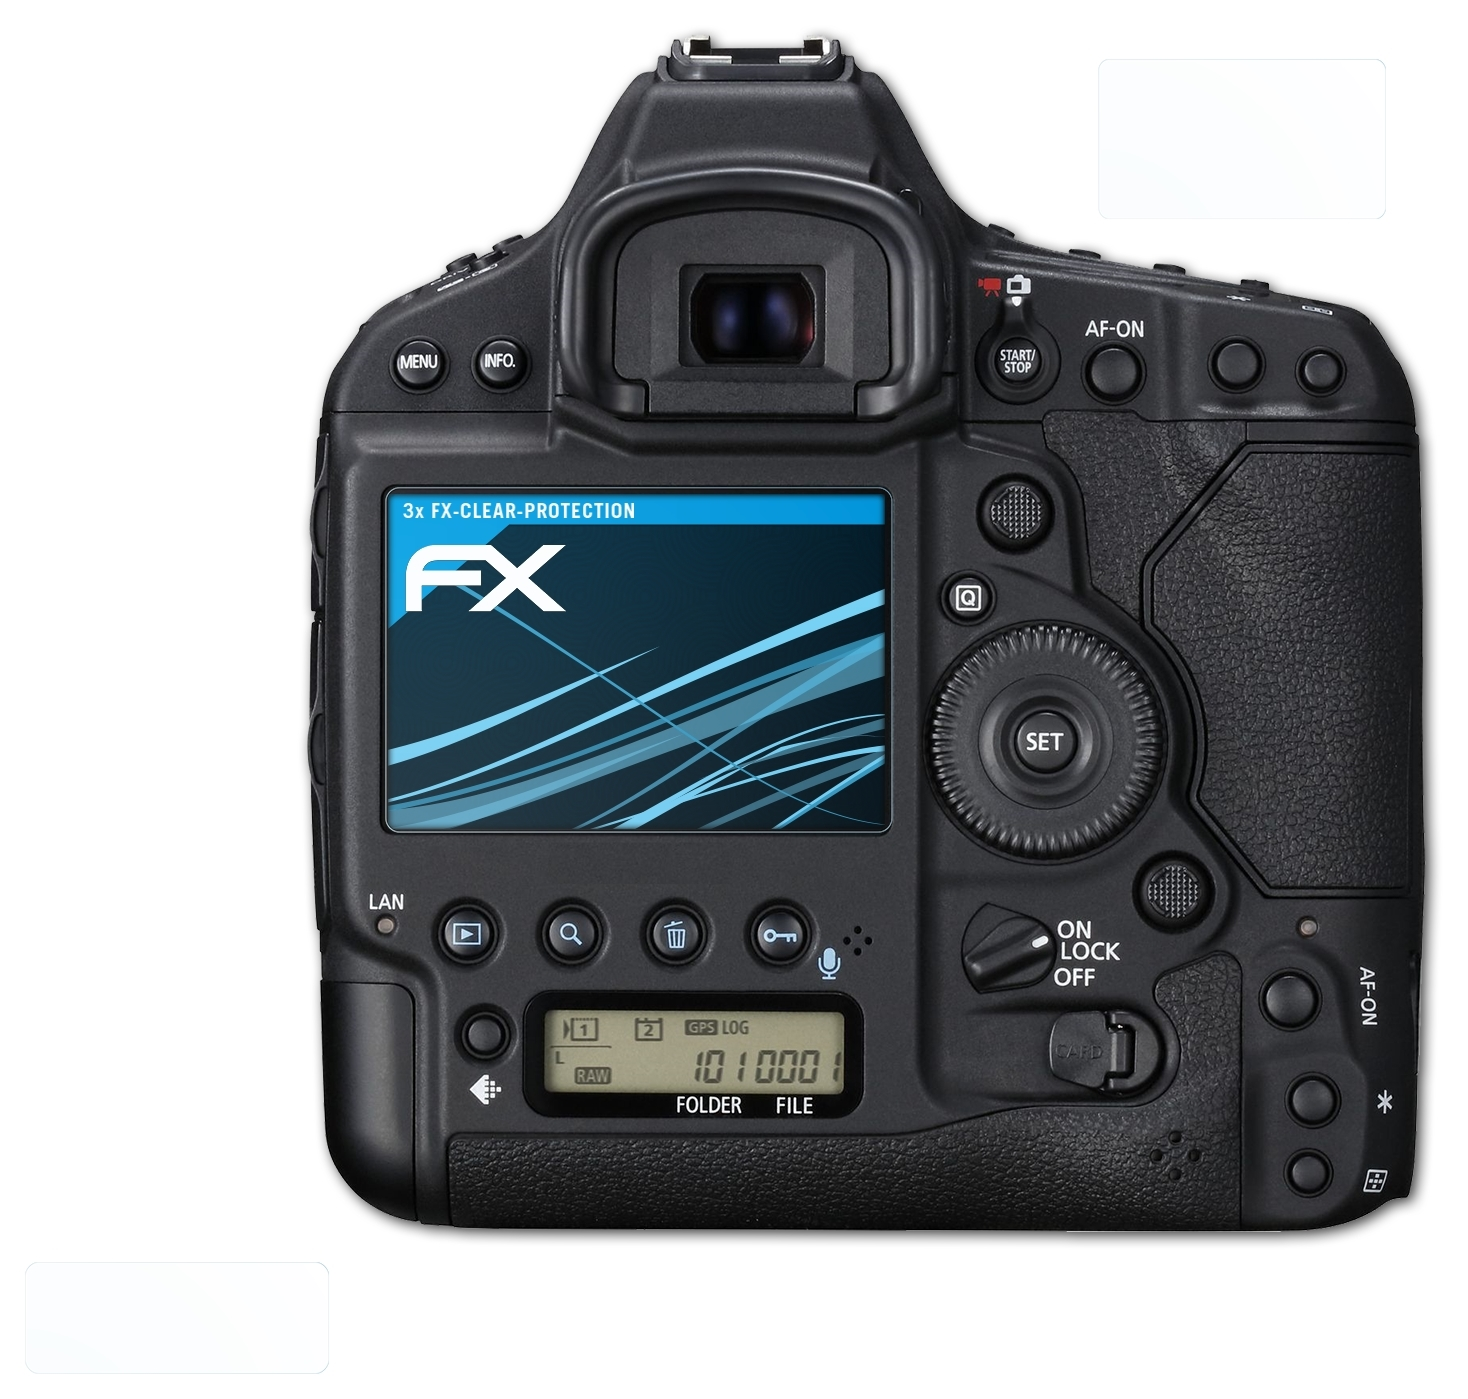 EOS-1D Mark Displayschutz(für III) X ATFOLIX 3x FX-Clear Canon